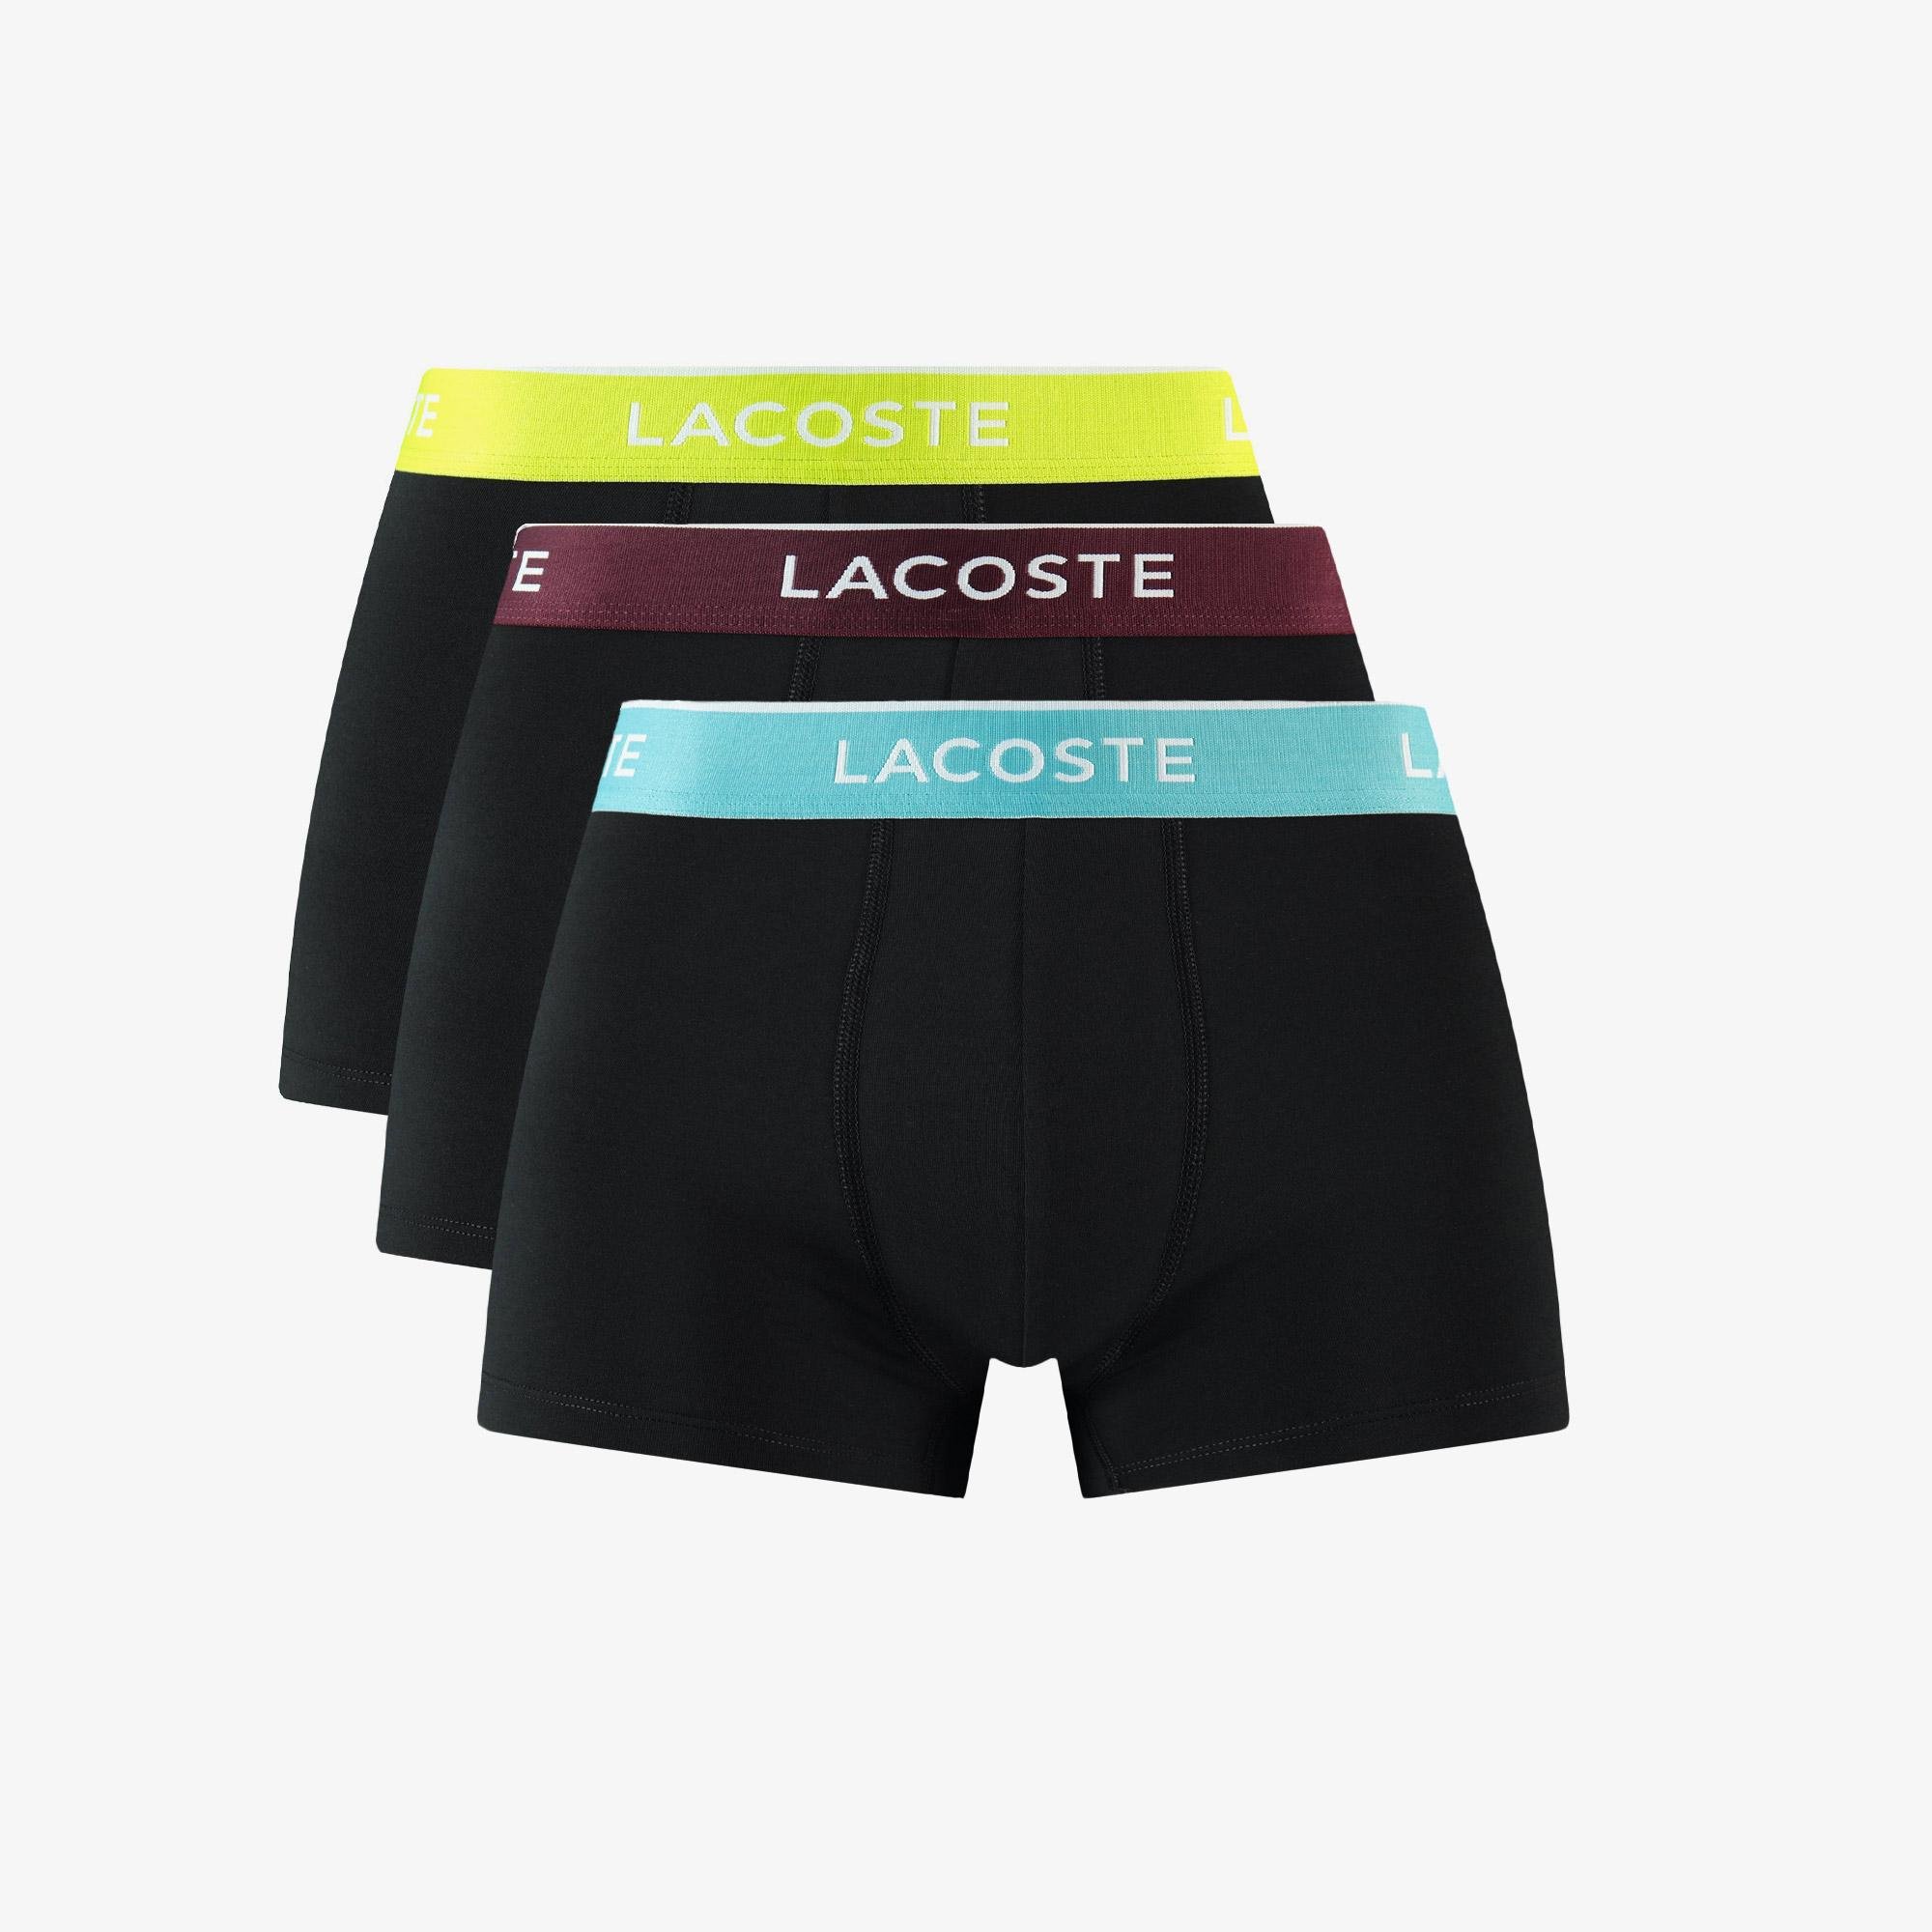 Lacoste Men’s 3-Pack Boxers